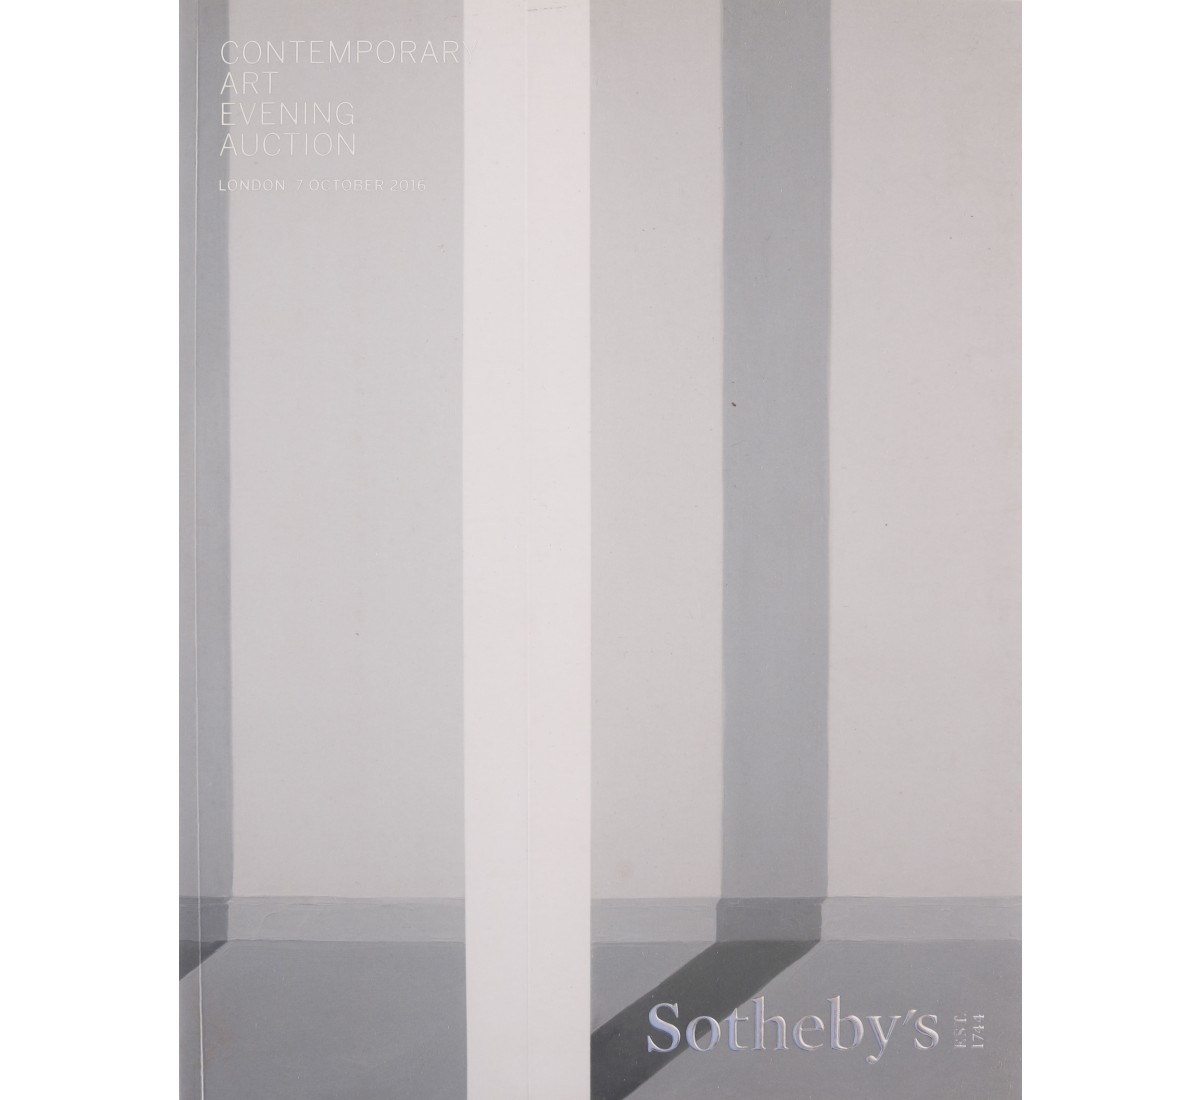 SOTHEBY'S, CONTEMPORARY ART